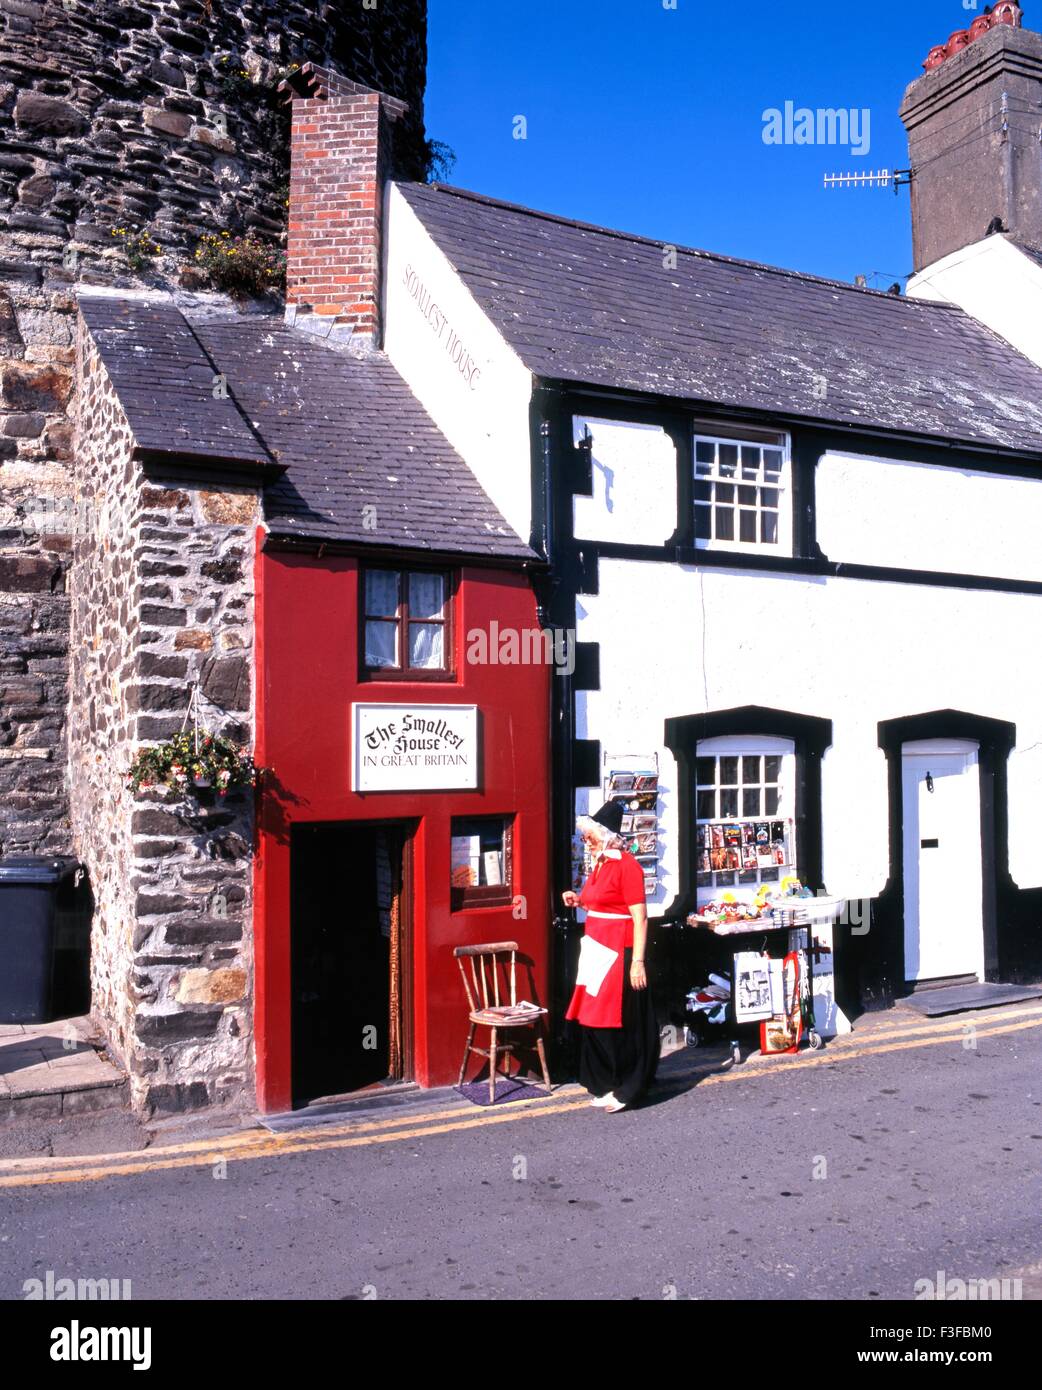 Das kleinste Haus in Großbritannien mit einer walisischen Dame in Tracht im Vordergrund, Conwy (Conway), Gwynedd, Wales. Stockfoto